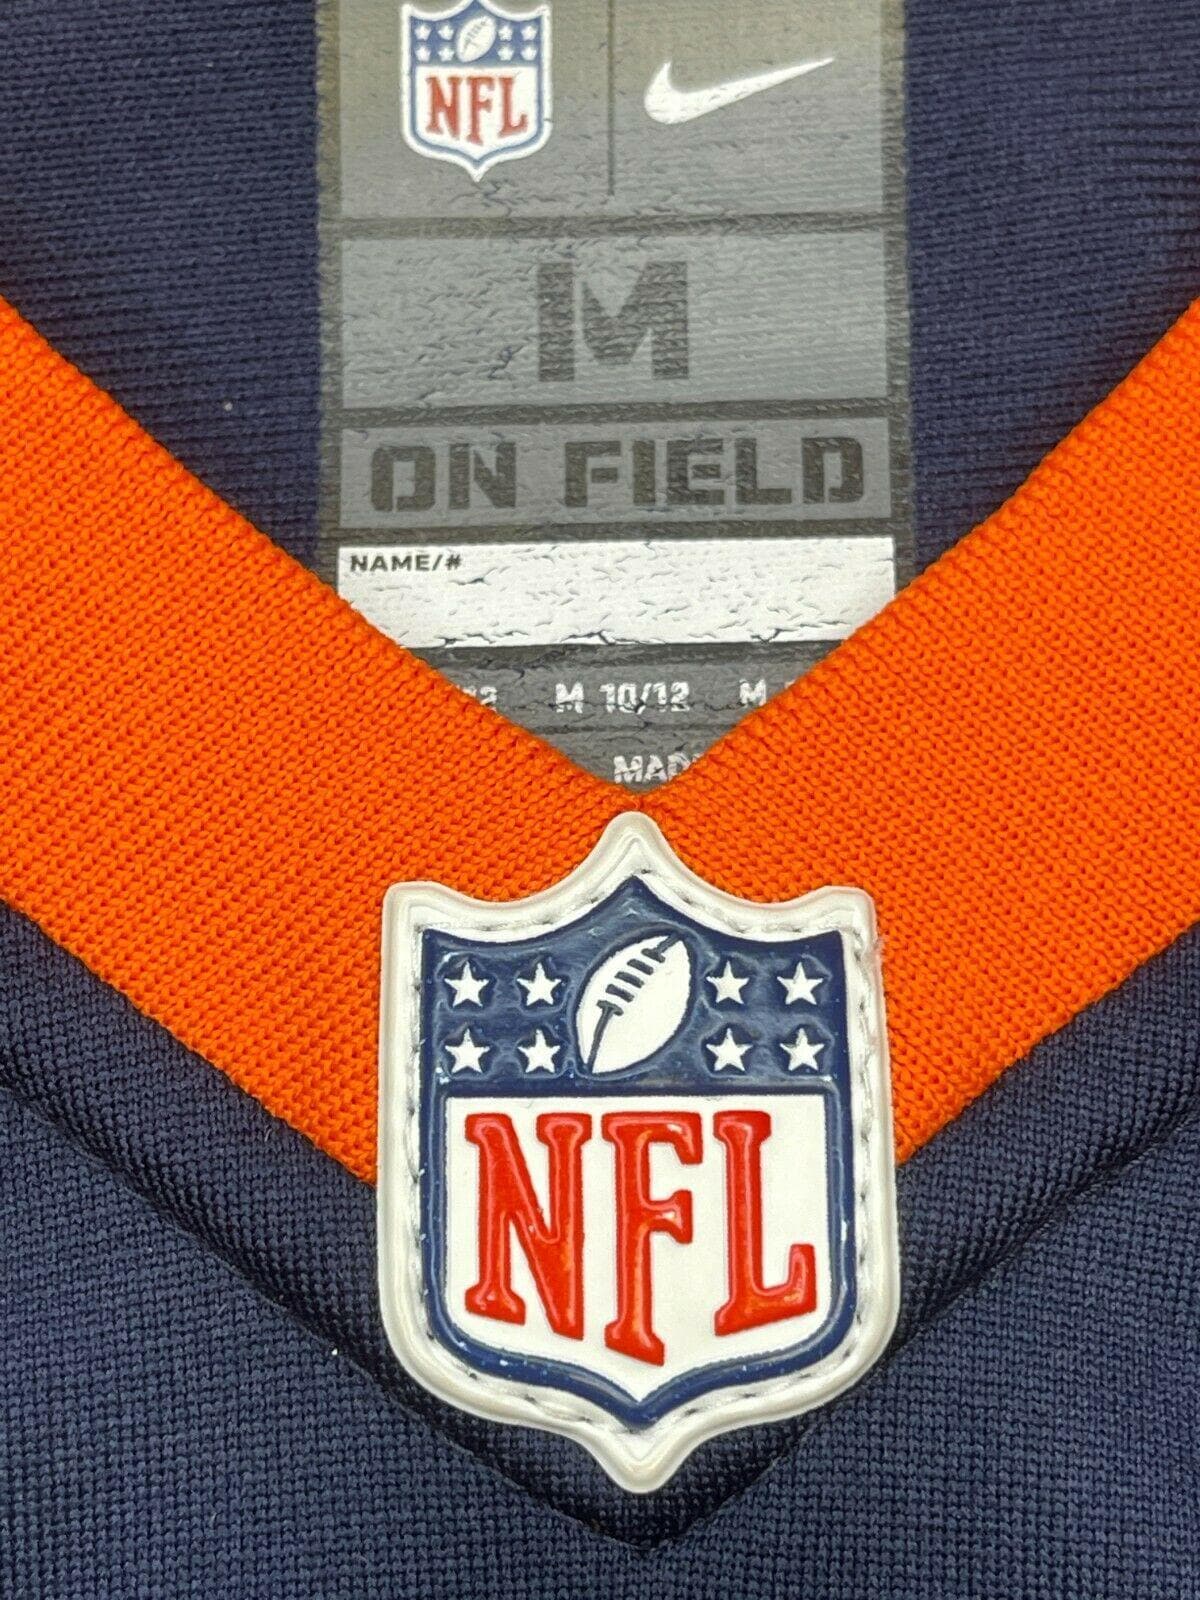 NFL Denver Broncos Peyton Manning #18 Game Jersey Youth Medium 10-12 (34")